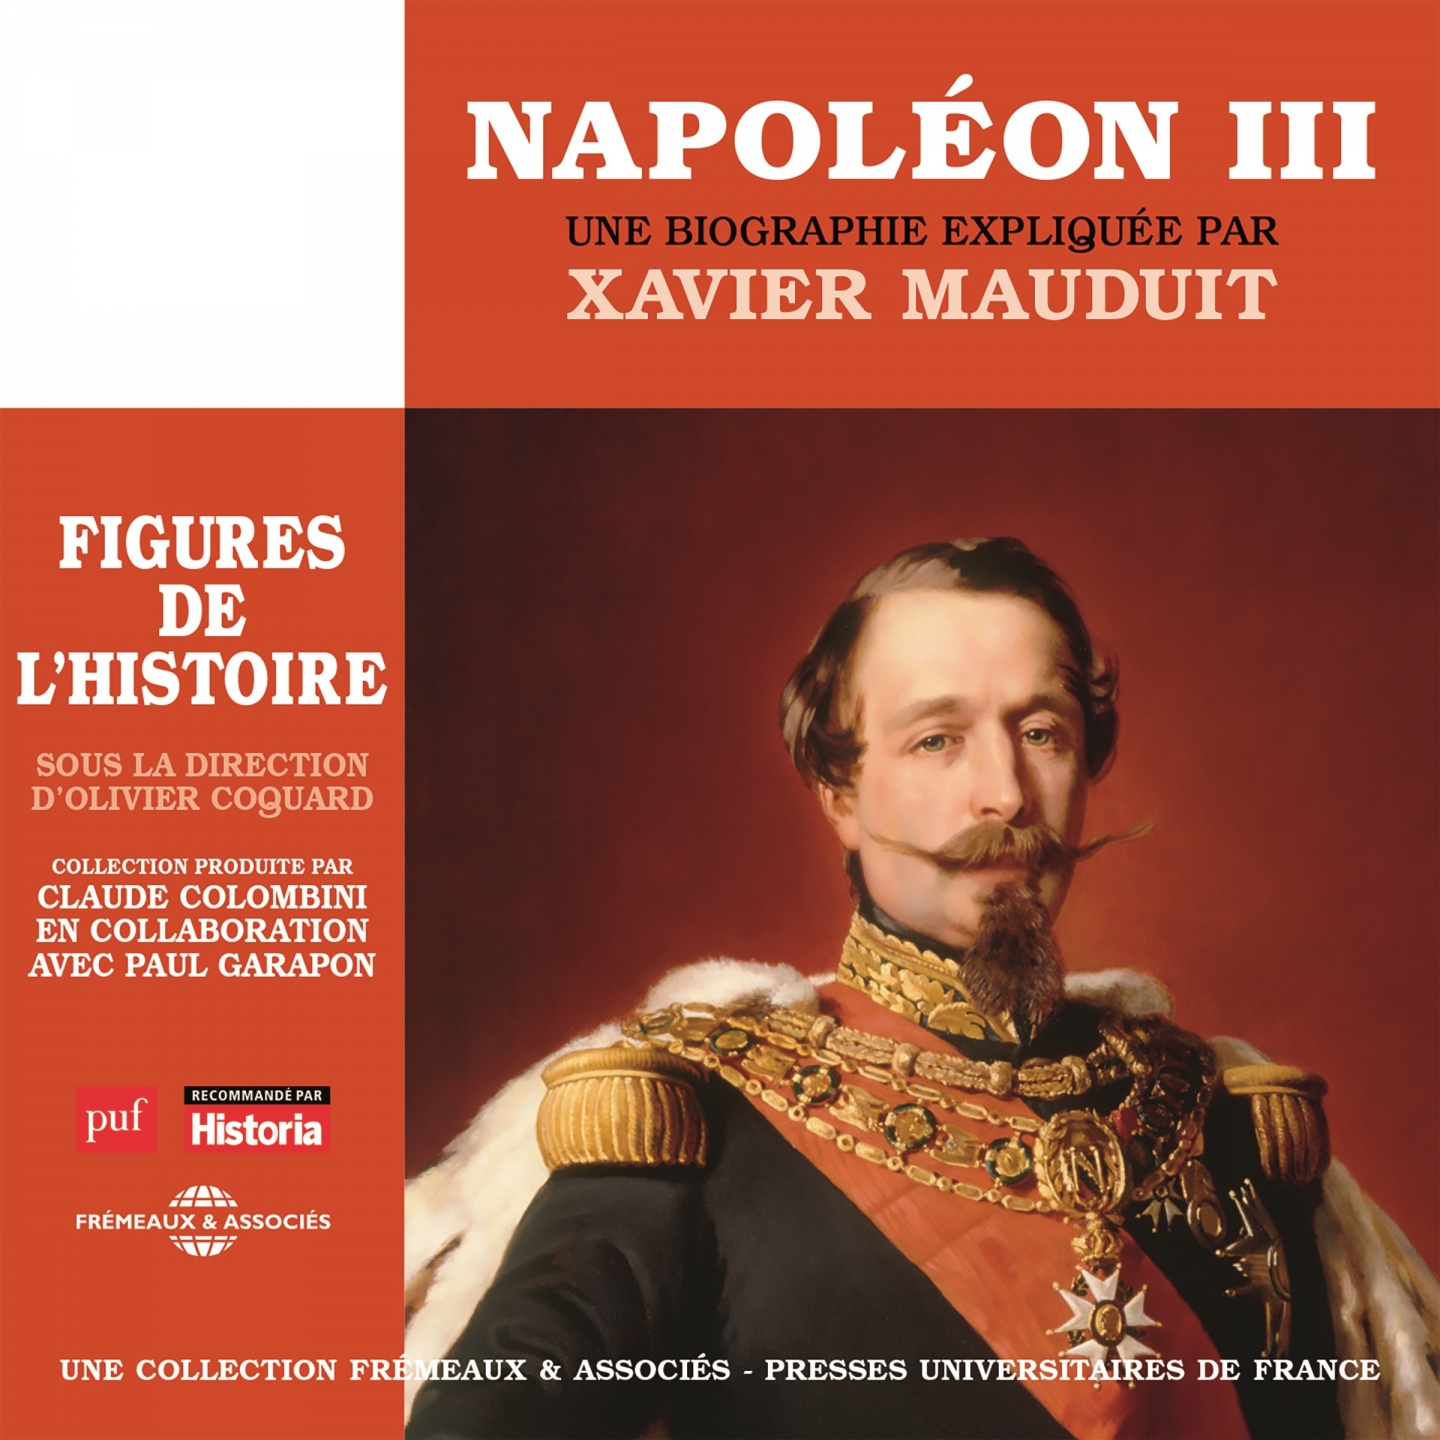 Napole on III, une biographie explique e par Xavier Mauduit Figures de l' histoire sous la direction d' olivier coguard